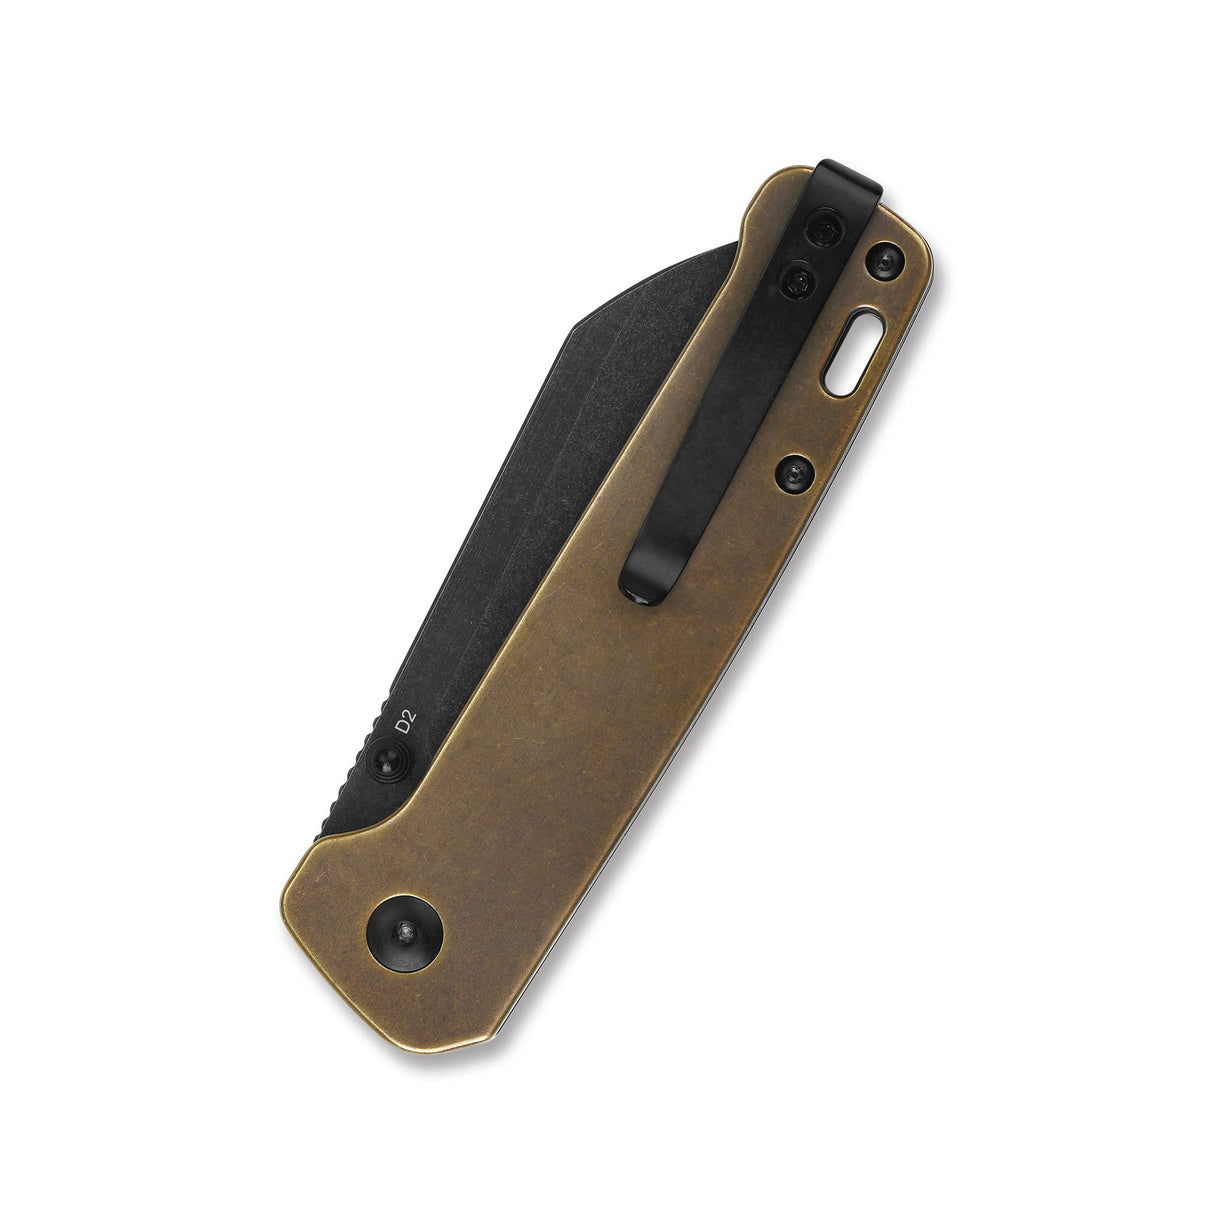 QSP Penguin Liner Lock Pocket Knife D2 Blade Brass Handle